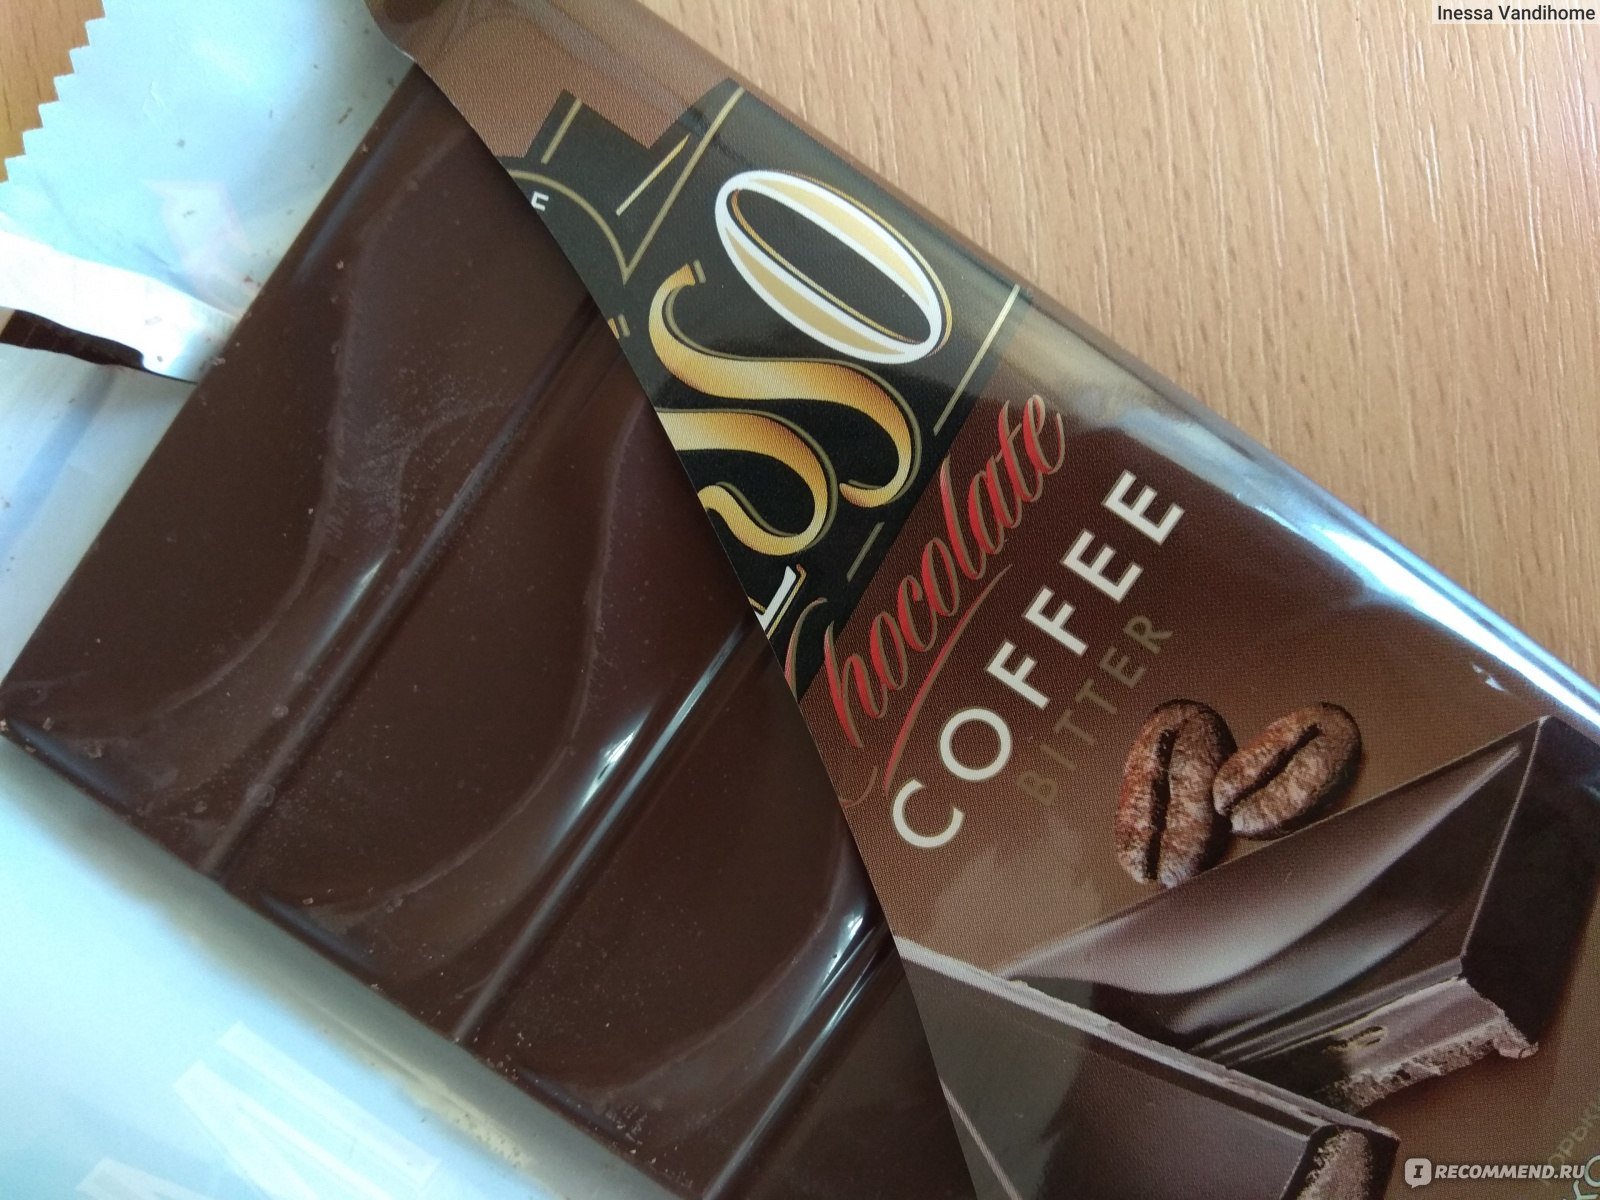 Шоколад фирмы. Бельгийский шоколад марки. Монте шоко шоколад. Шоколадка Франция.